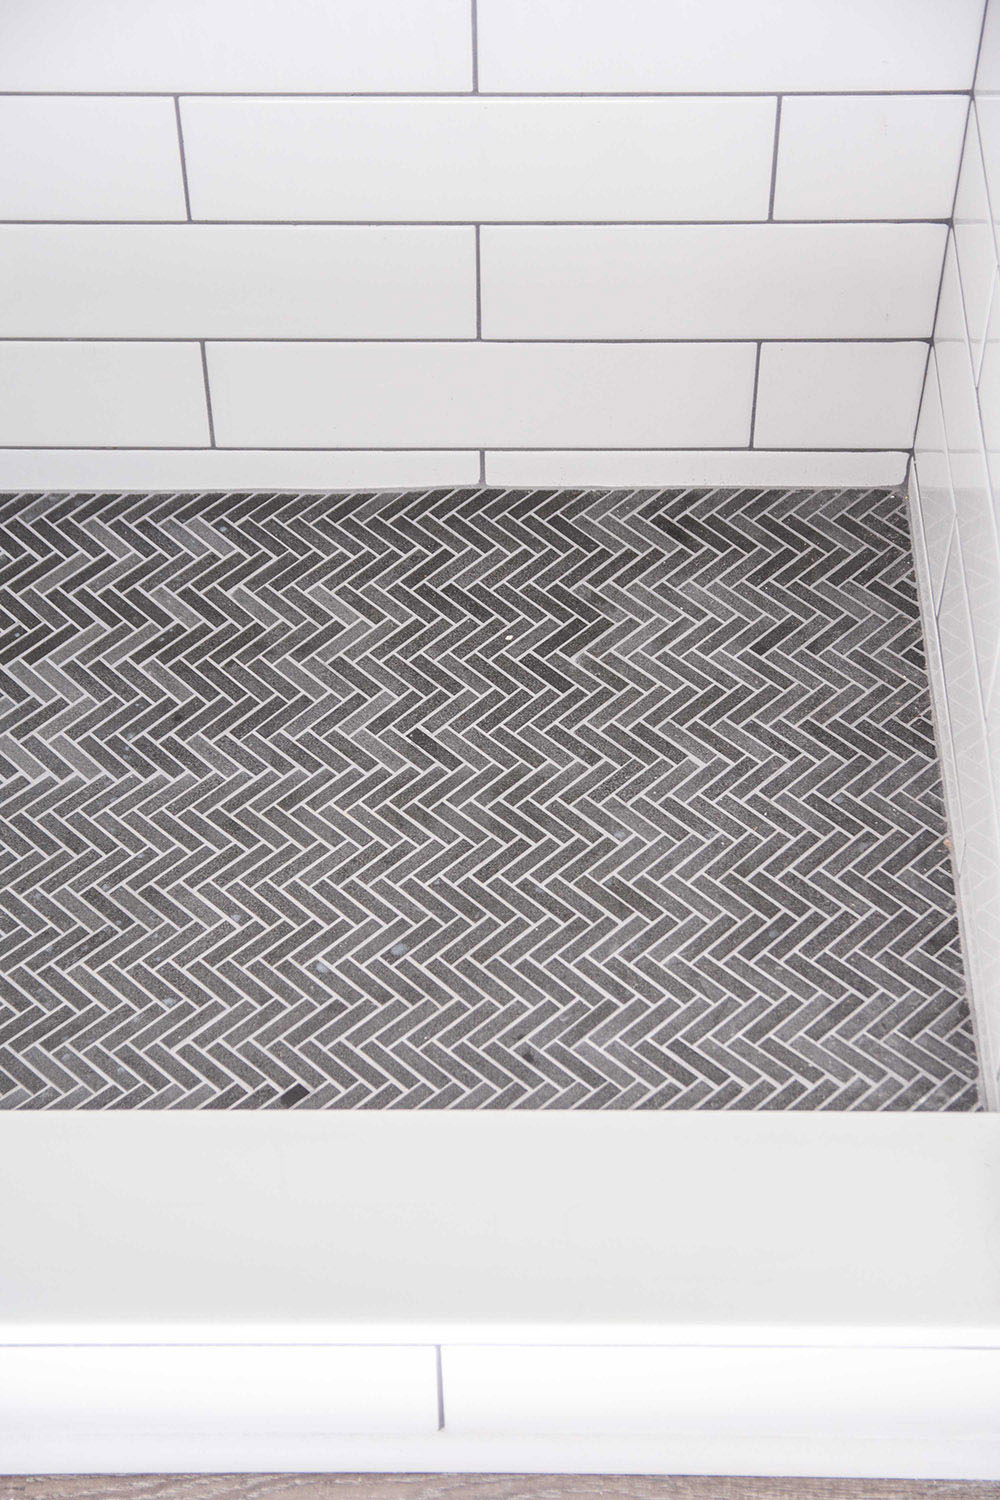 A shower floor with dark mosaic herringbone tile.